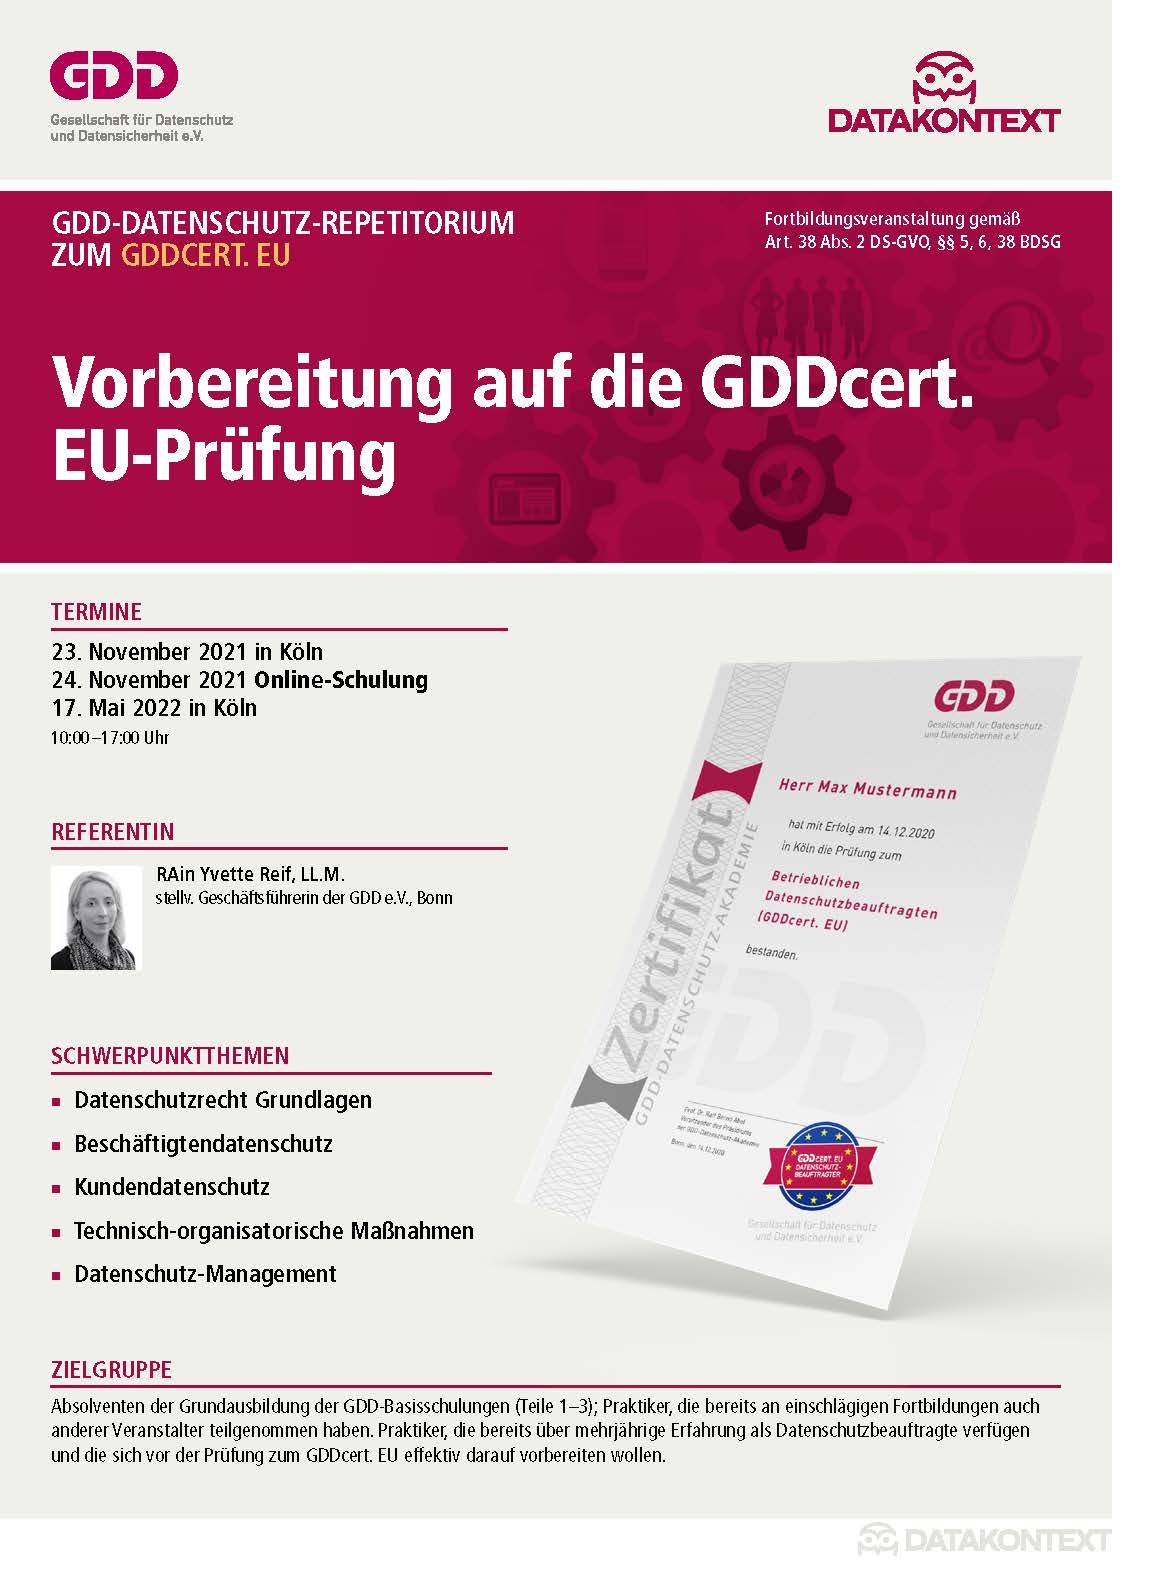 Datenschutz-Repetitorium zum GDDcert EU: Vorbereitung auf die GDDcert. EU-Prüfung